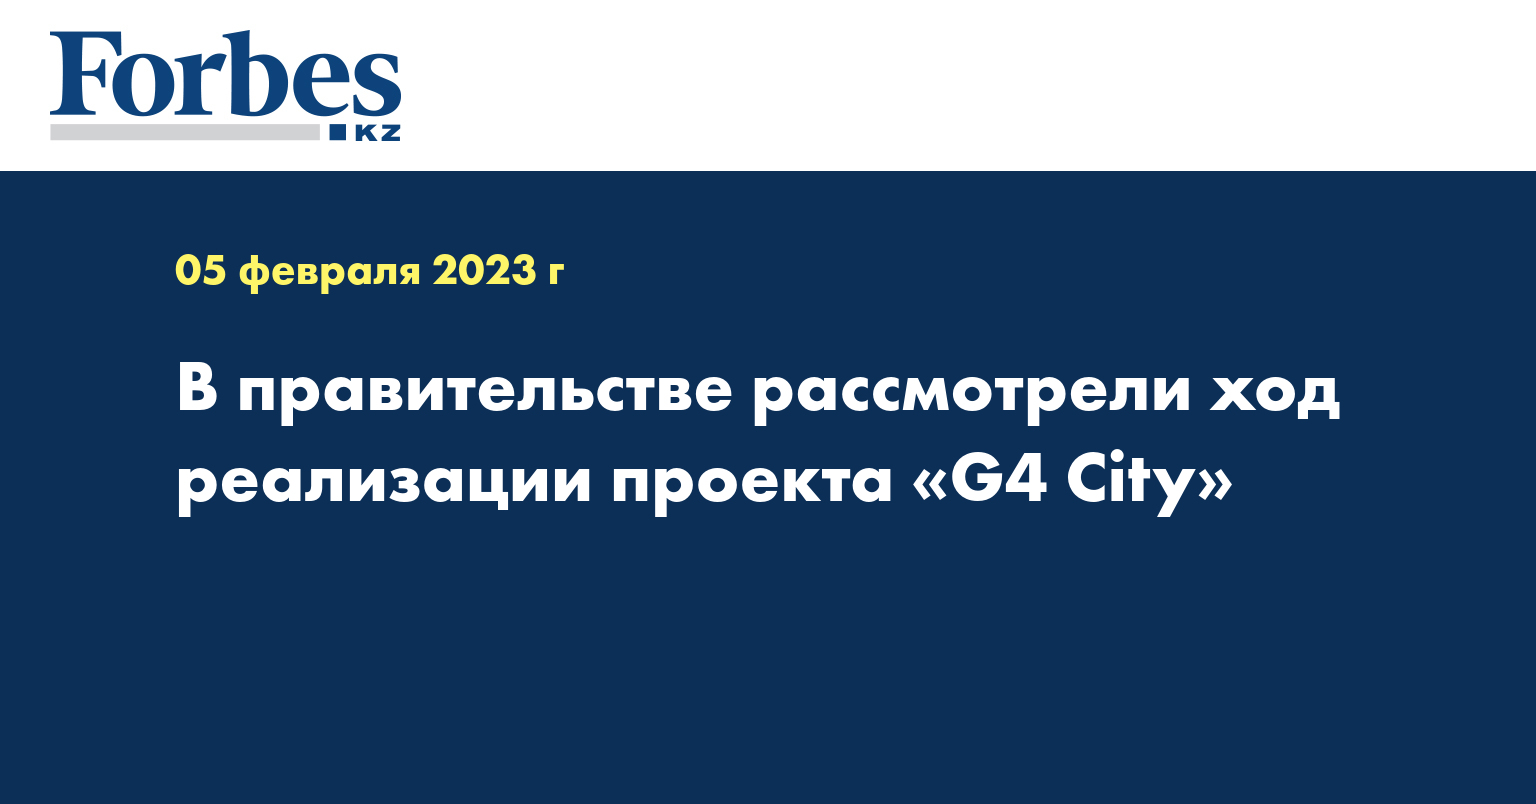 В правительстве рассмотрели ход реализации проекта «G4 City»